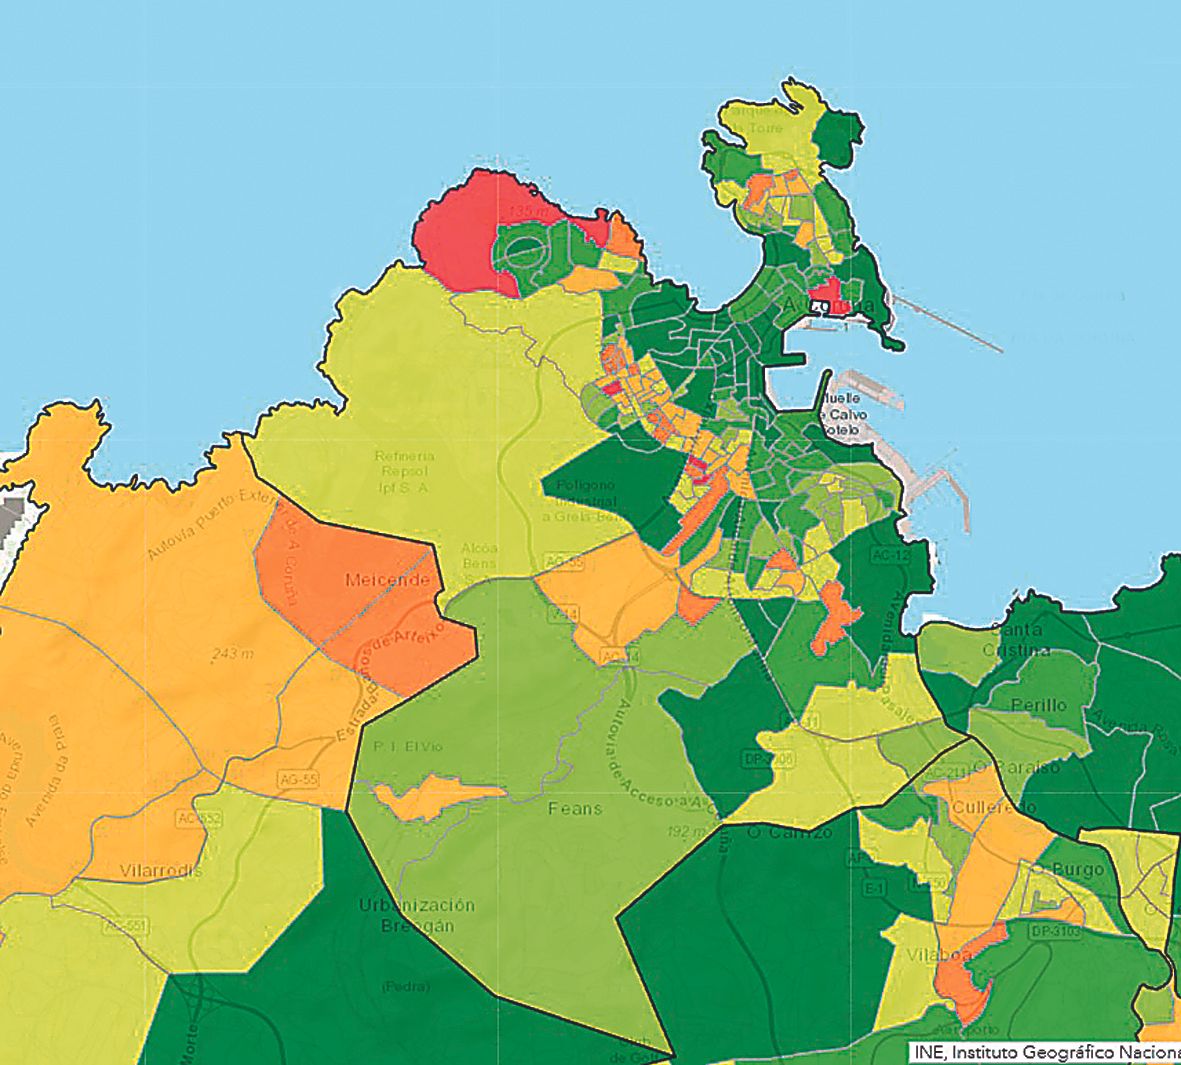 Renta media por hogar, en el mapa del INE